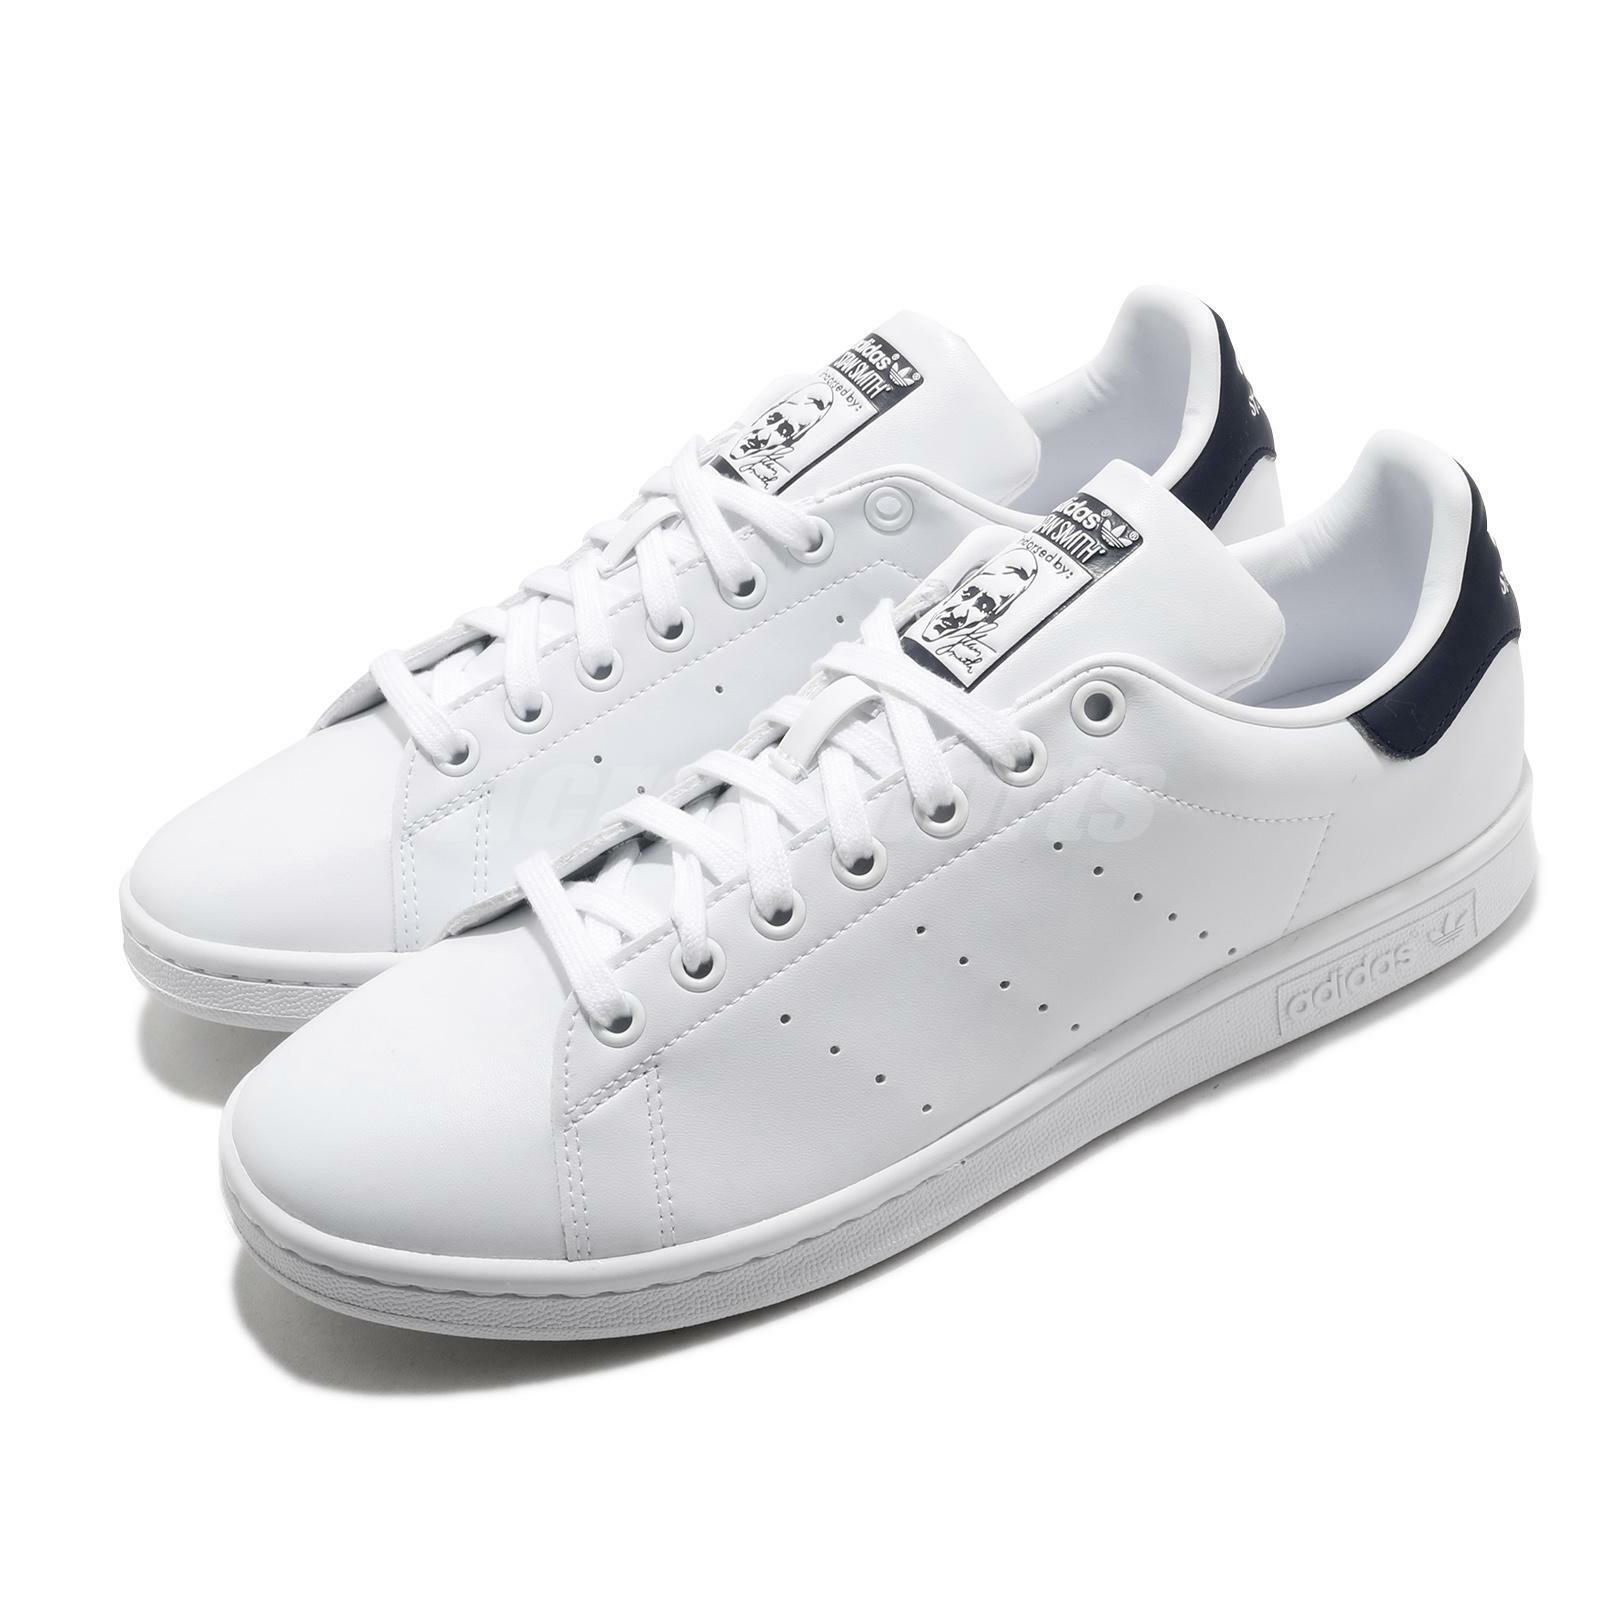 Omkleden aankunnen Buitenshuis adidas Originals Stan Smith White Navy Men Unisex Casual Shoes Sneakers  FX5501 | eBay